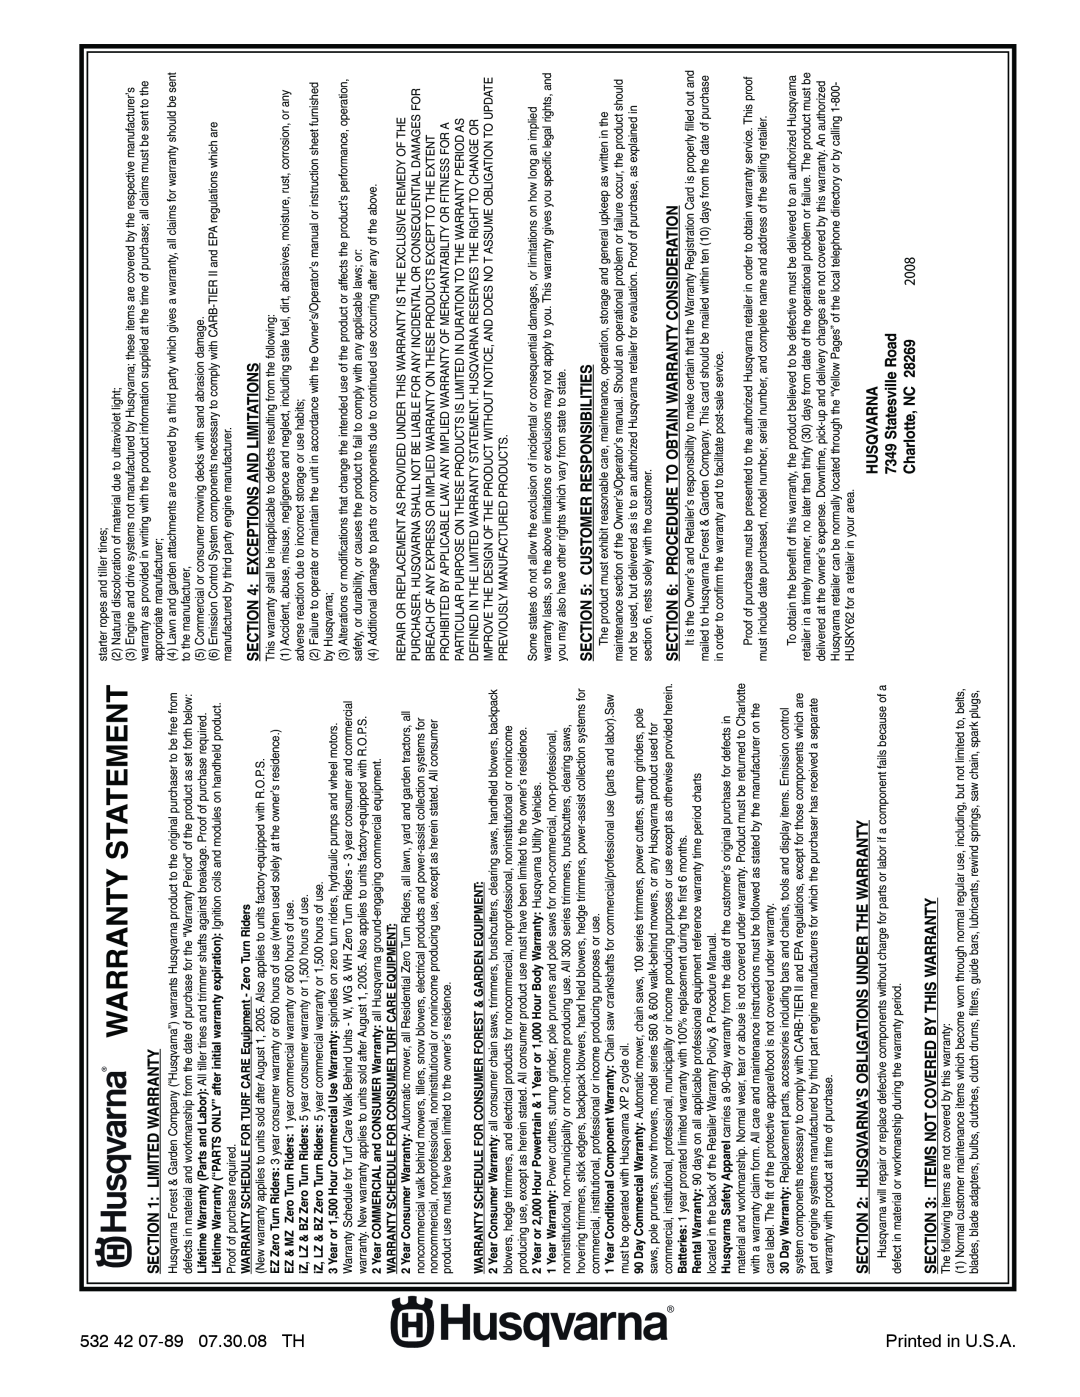 Husqvarna 924SB-XLS owner manual Warranty Statement, 2008, Charlotte, NC 